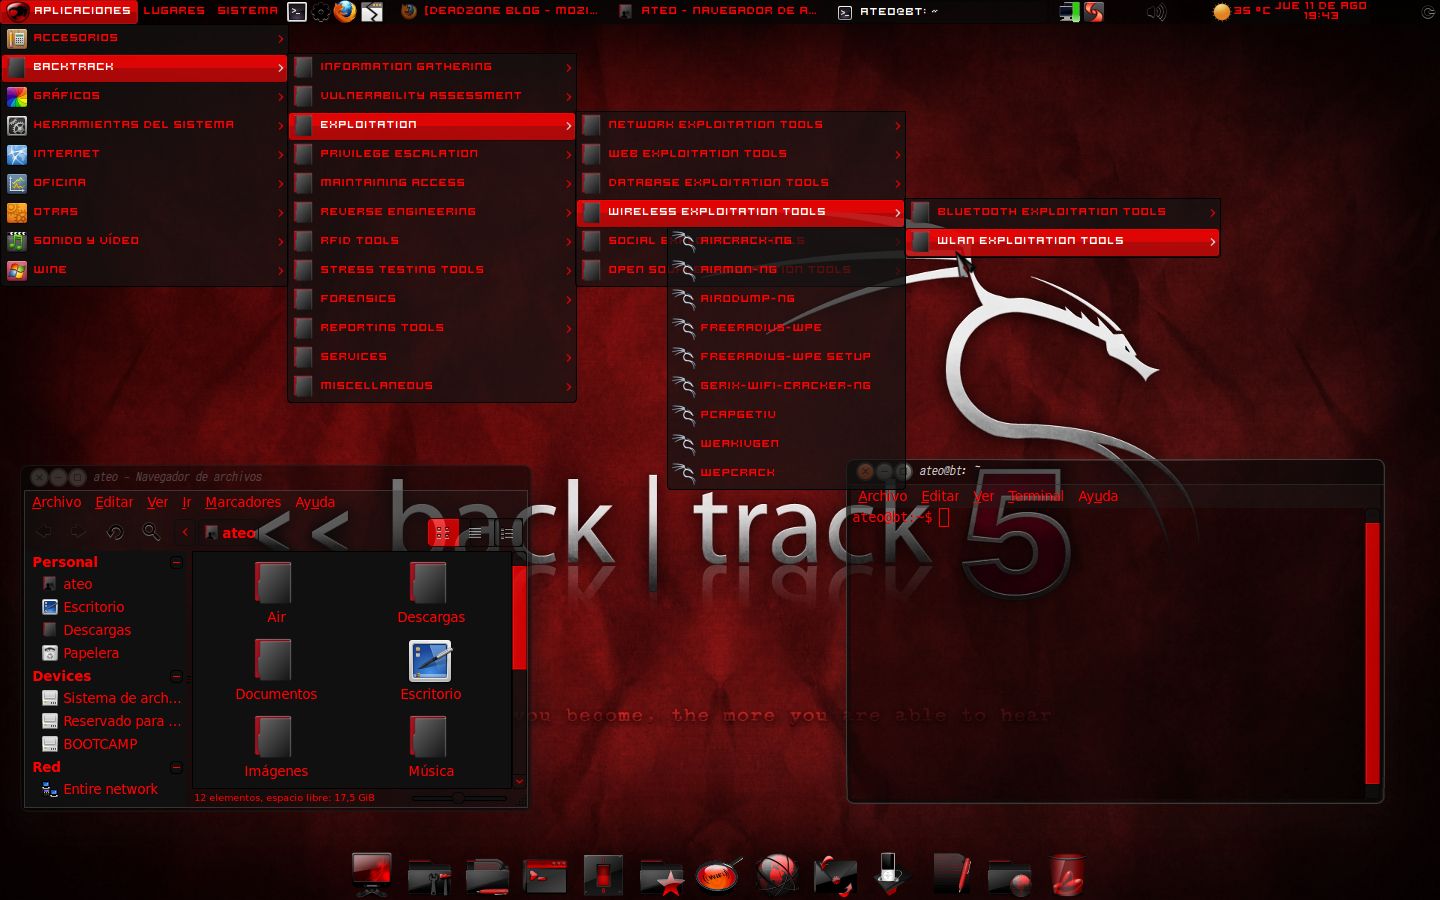 backtrack 5 linux download